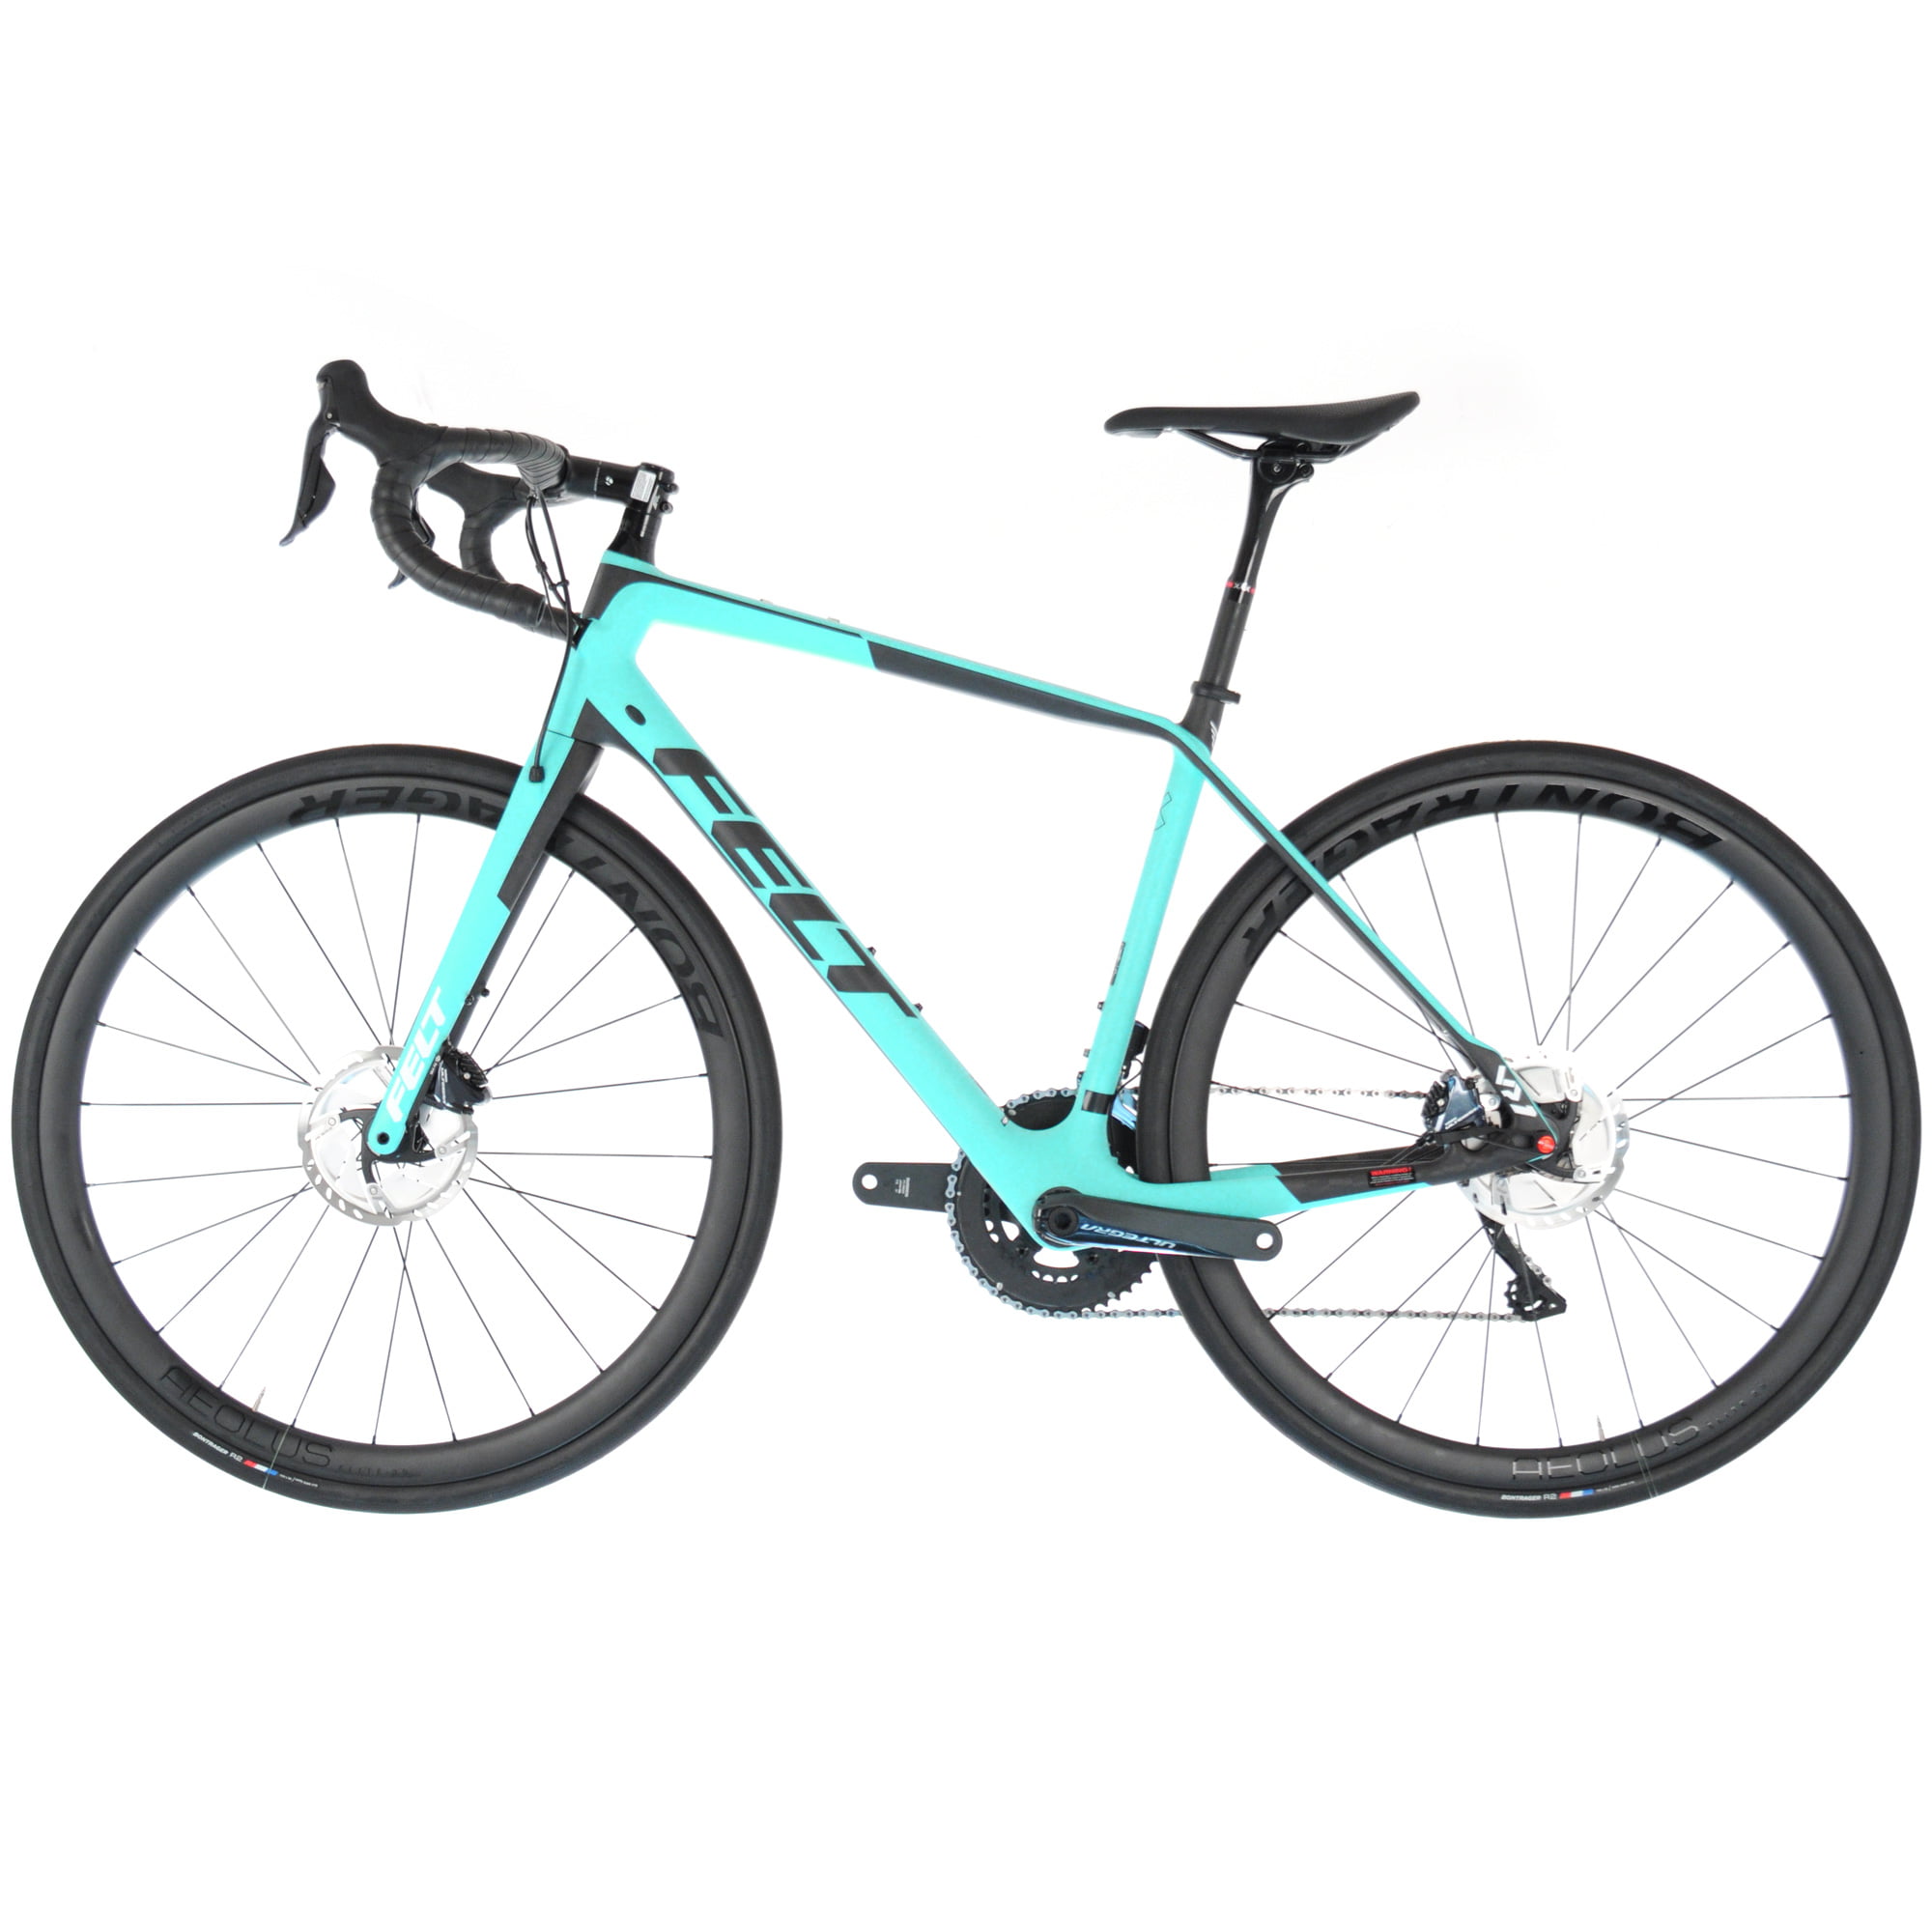 Felt VR1 Carbon Endurance Bike//Shimano Ultegra Di2 // 54cm/Aqua/Black - Walmart.com